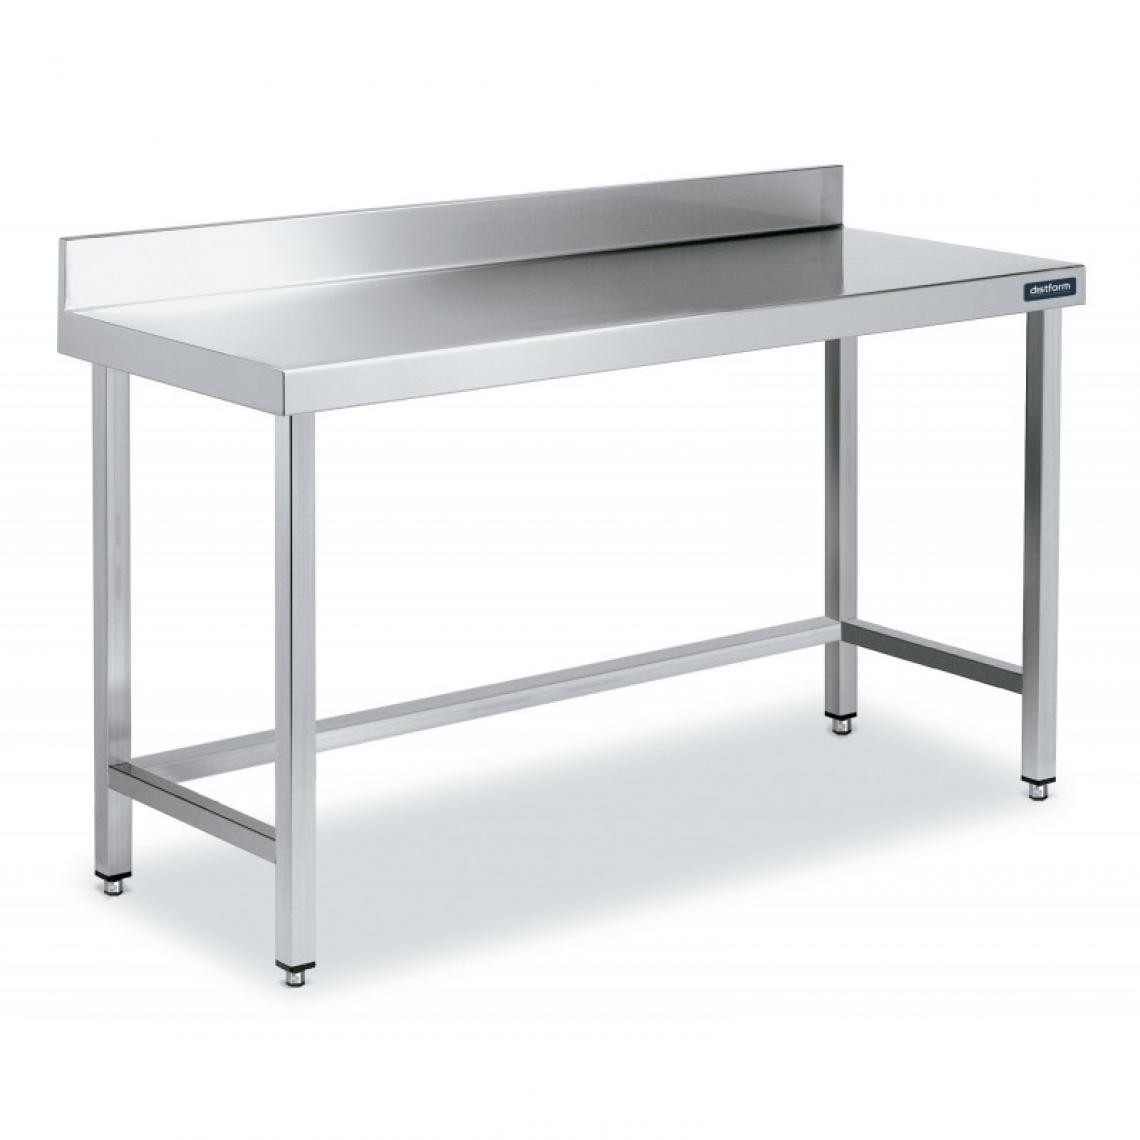 DISTFORM - Table Adossée en Inox avec Renforts Profondeur 700 mm - Distform - Acier inoxydable2600x700 - Tables à manger